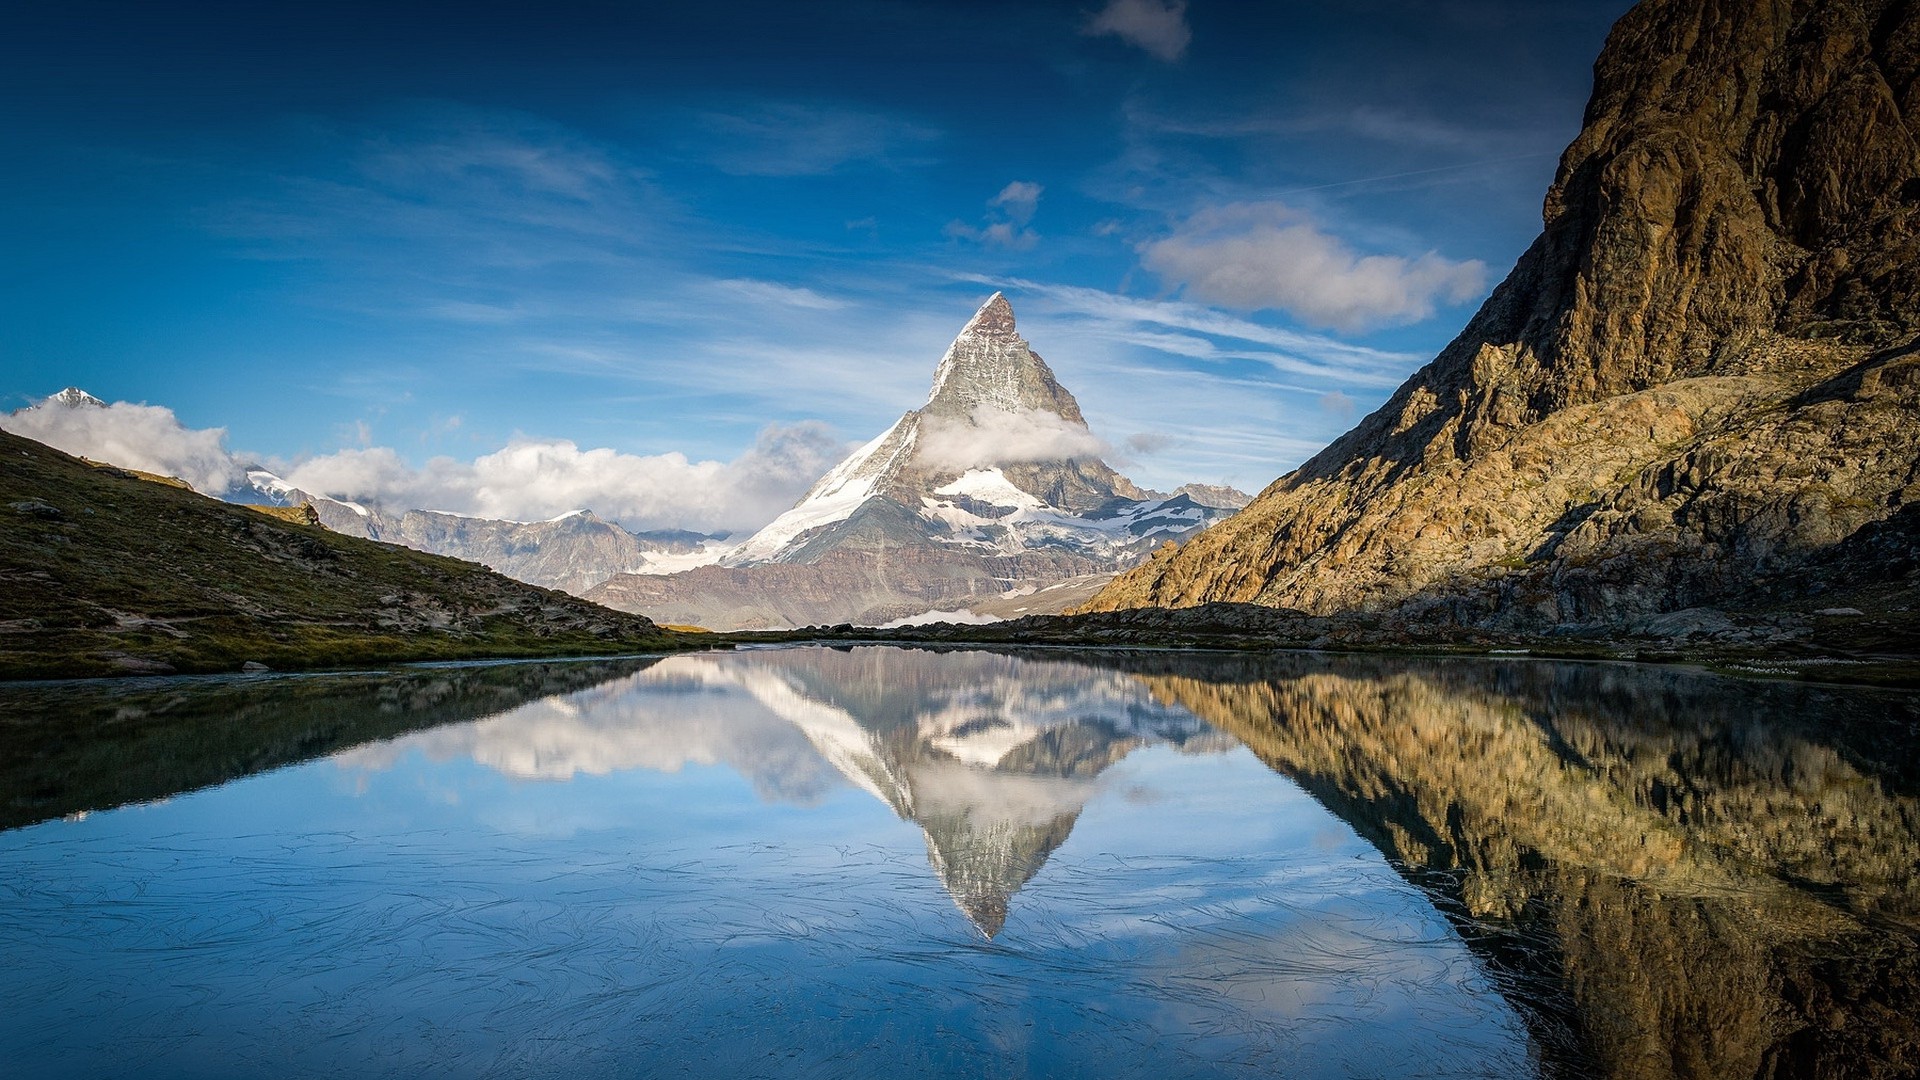 1920x1080 wallpapers: Alps, Matterhorn, mountains, lake (image)